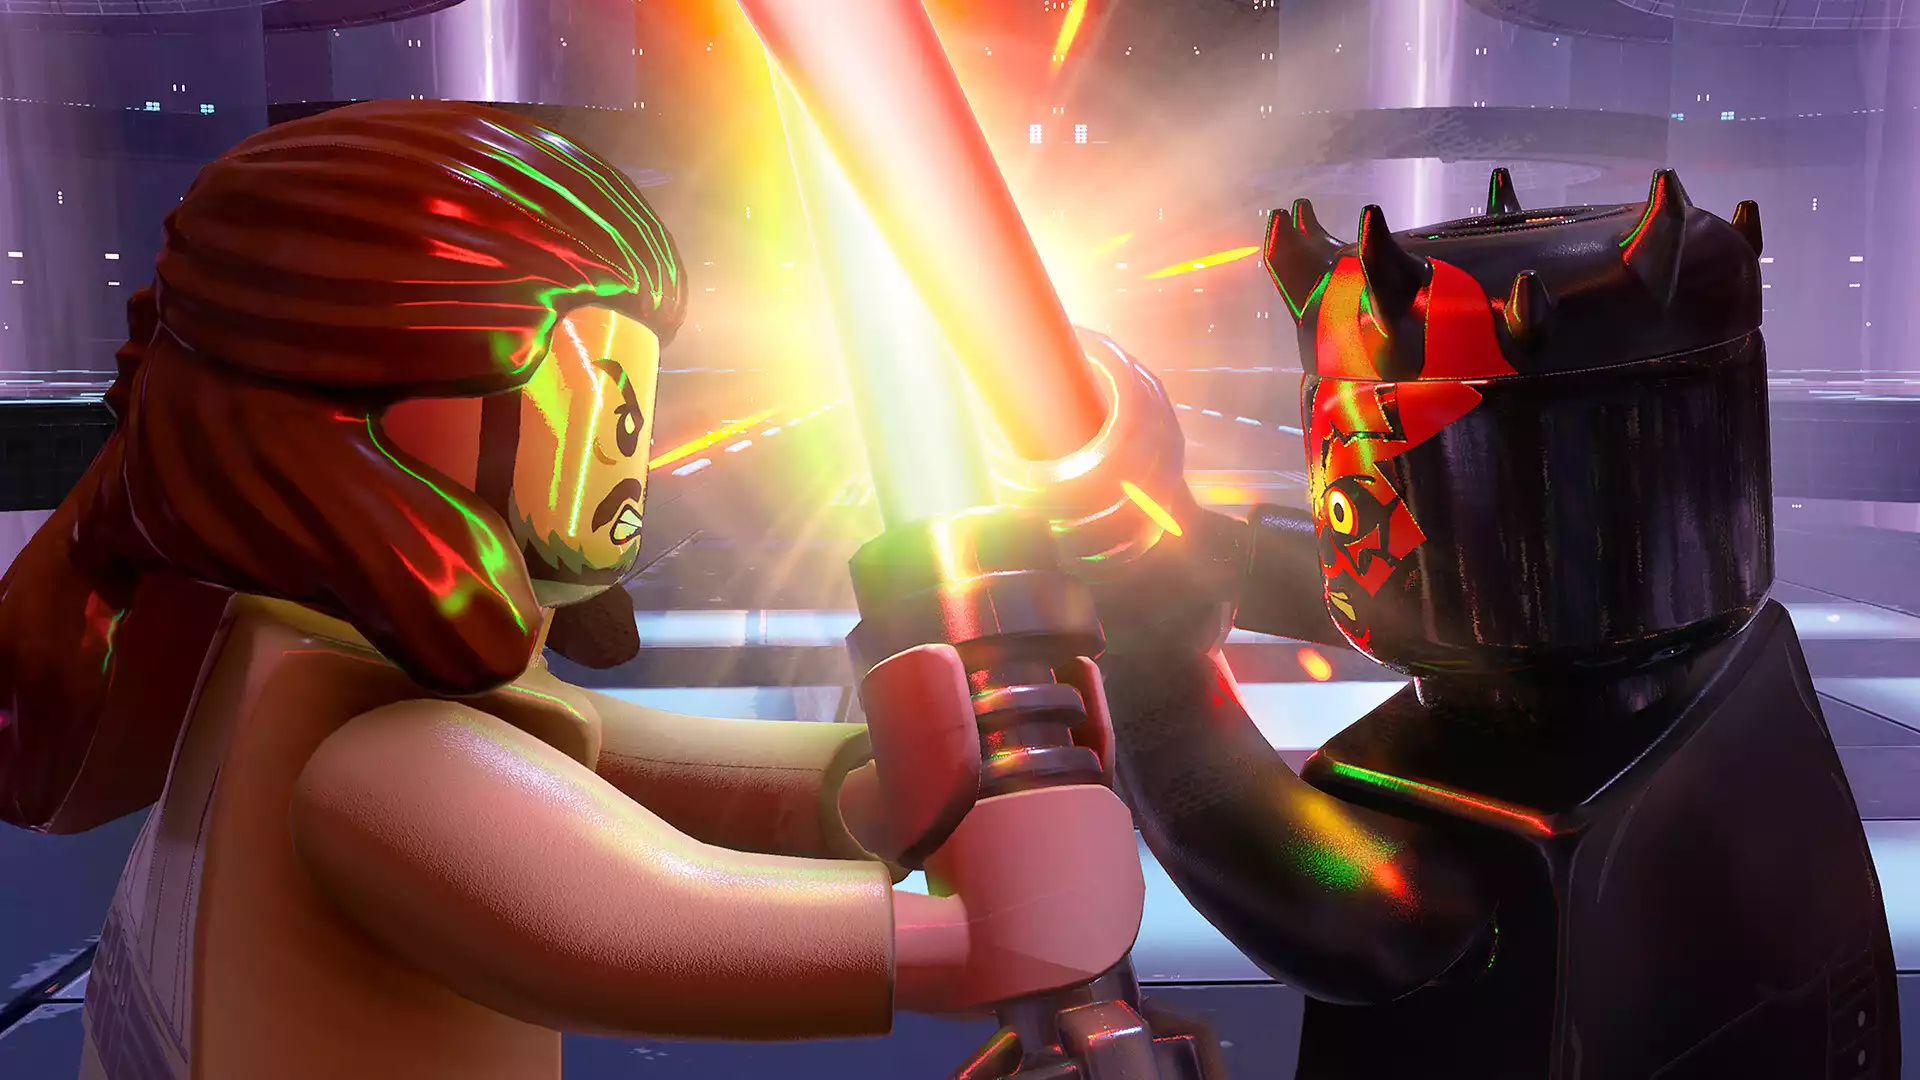 Does LEGO Wars: Skywalker Saga Have Online Co-Op?